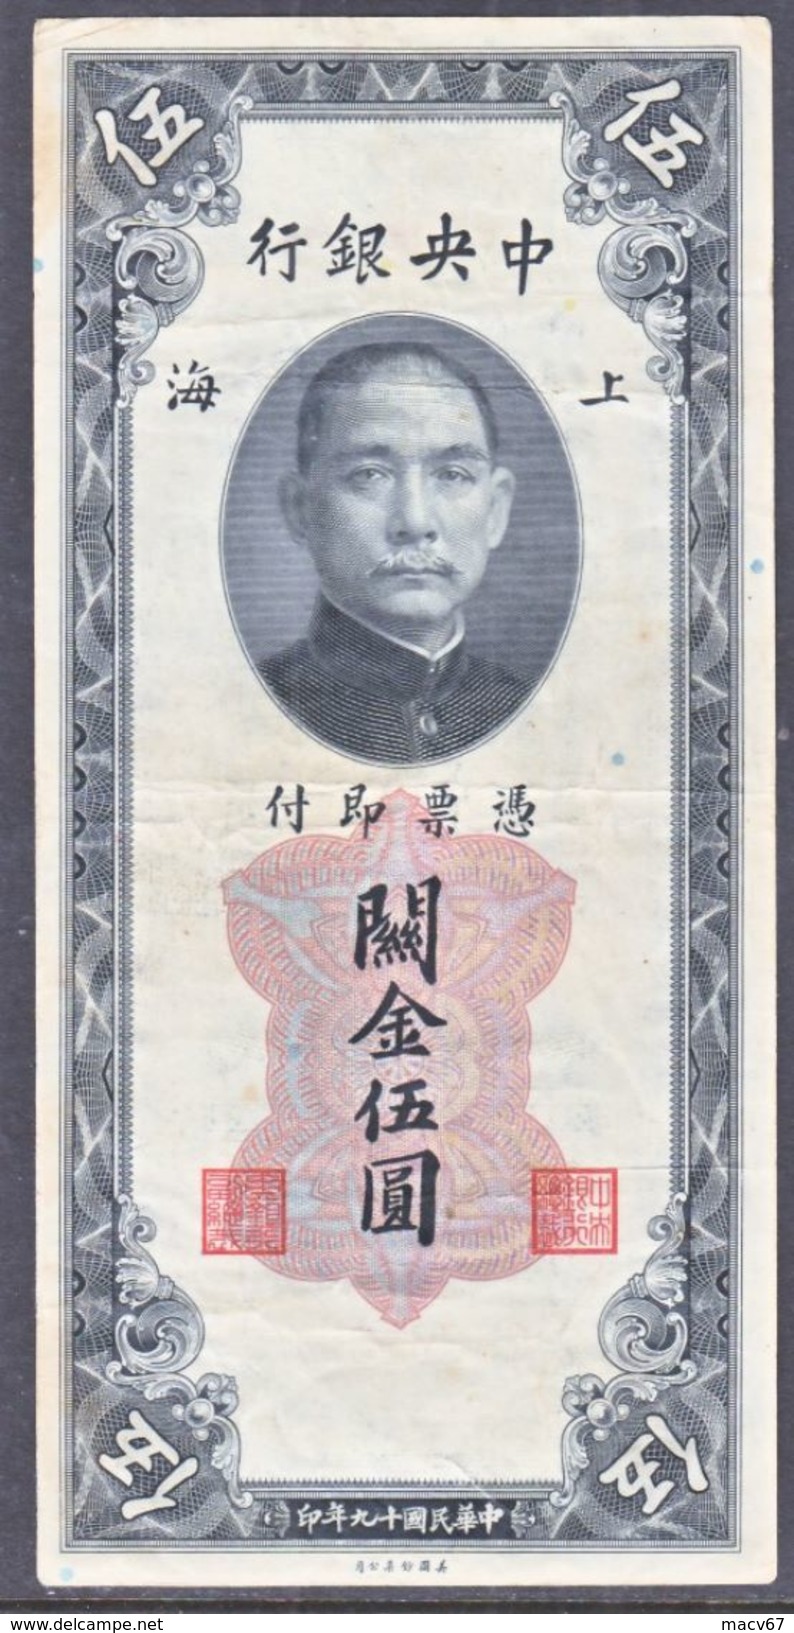 CHINA CENTRAL  BANK  1930 - China